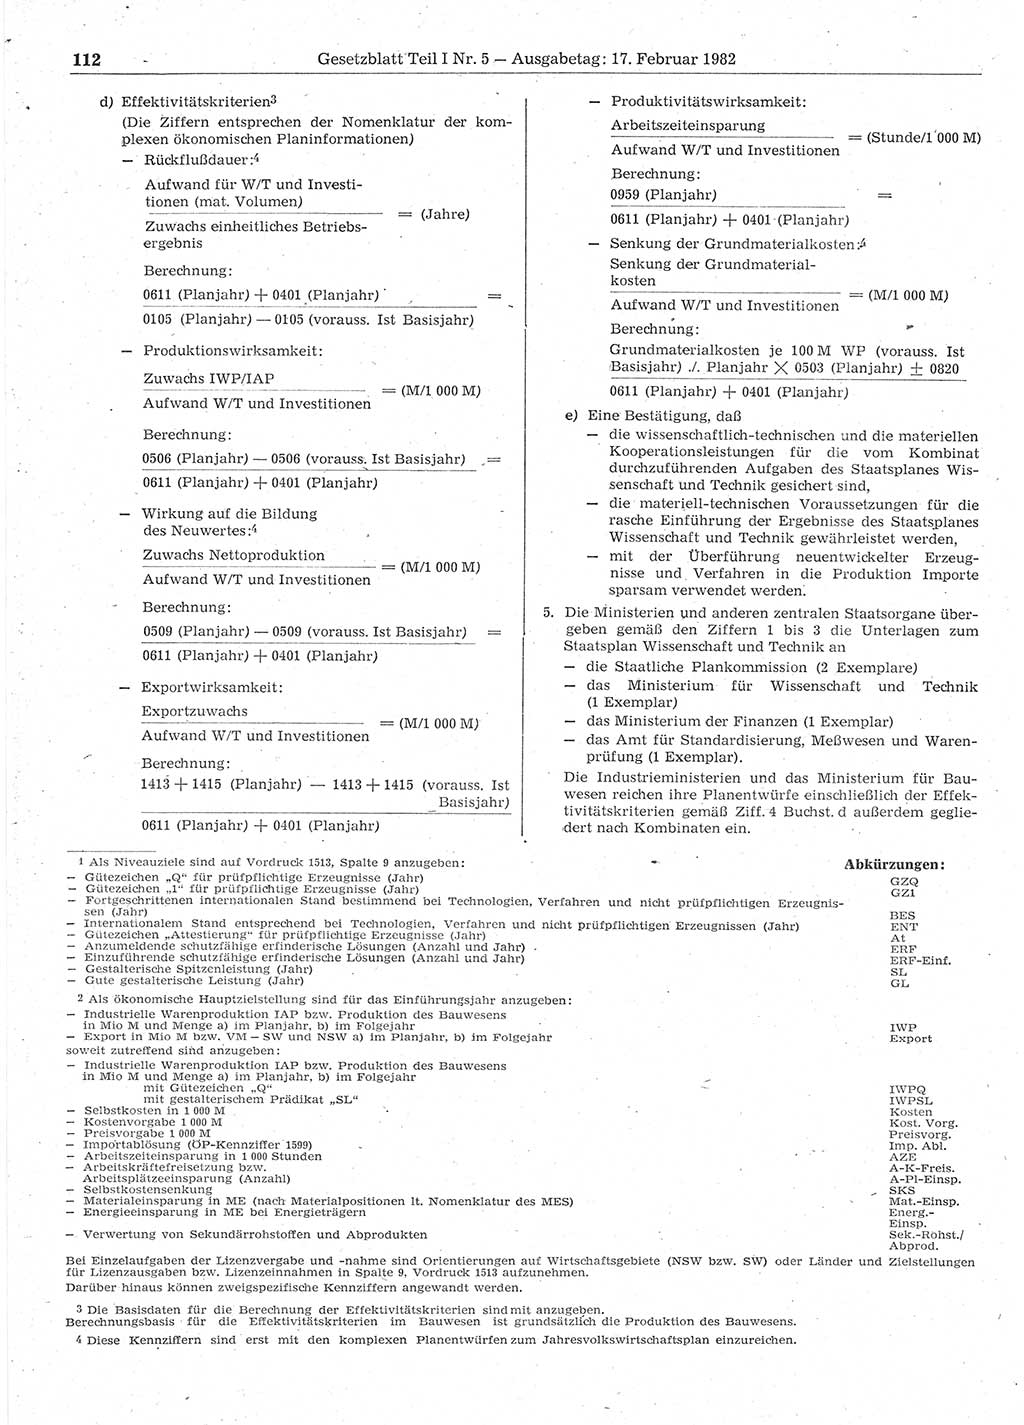 Gesetzblatt (GBl.) der Deutschen Demokratischen Republik (DDR) Teil Ⅰ 1982, Seite 112 (GBl. DDR Ⅰ 1982, S. 112)